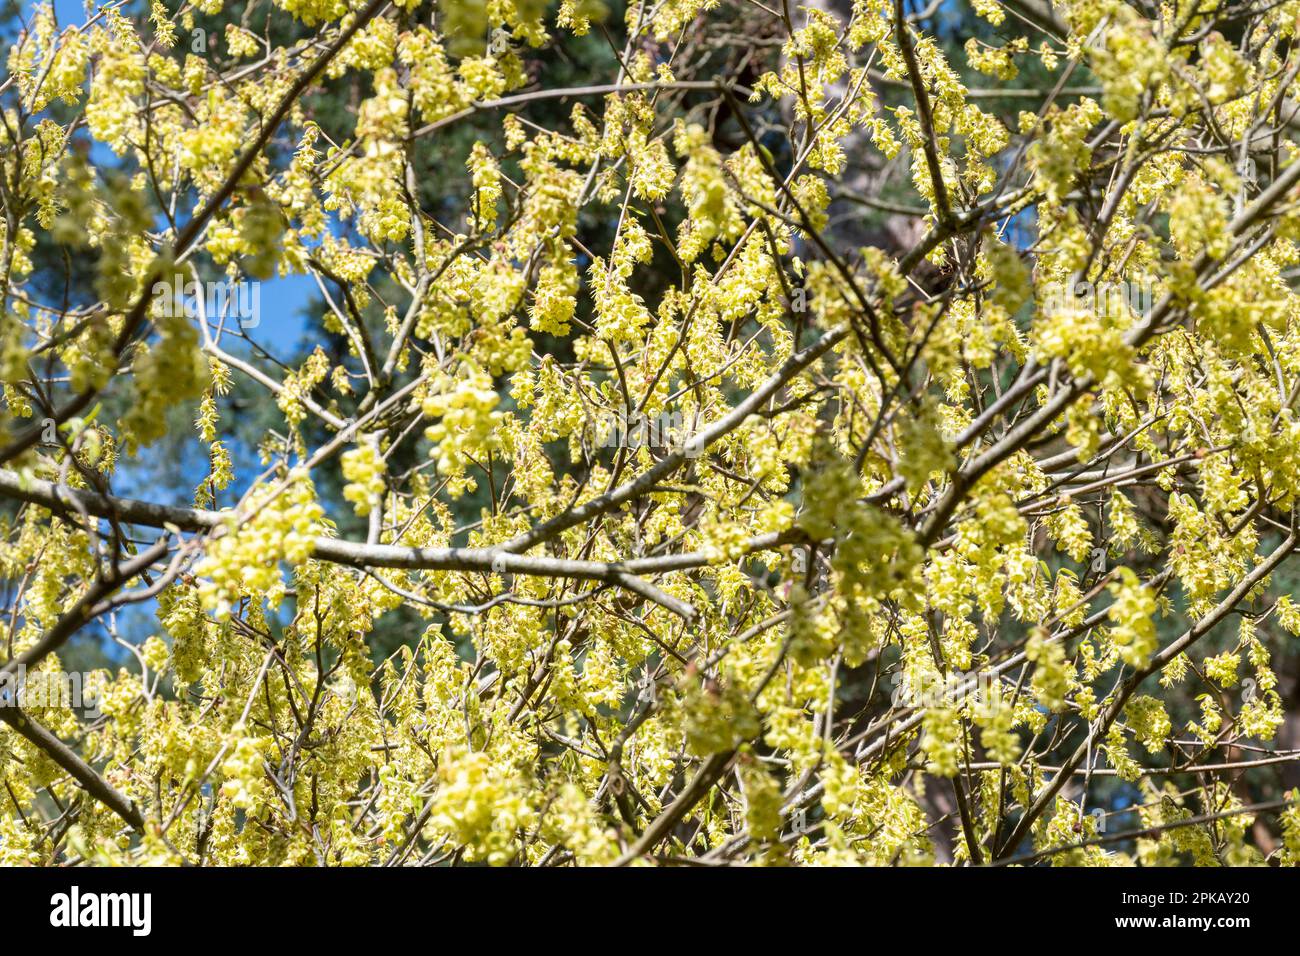 Pendelnde, duftende gelbe Blumen von Corylopsis glabrescens Straub, einer duftenden Winterhasel, die im Frühling blüht, Großbritannien Stockfoto